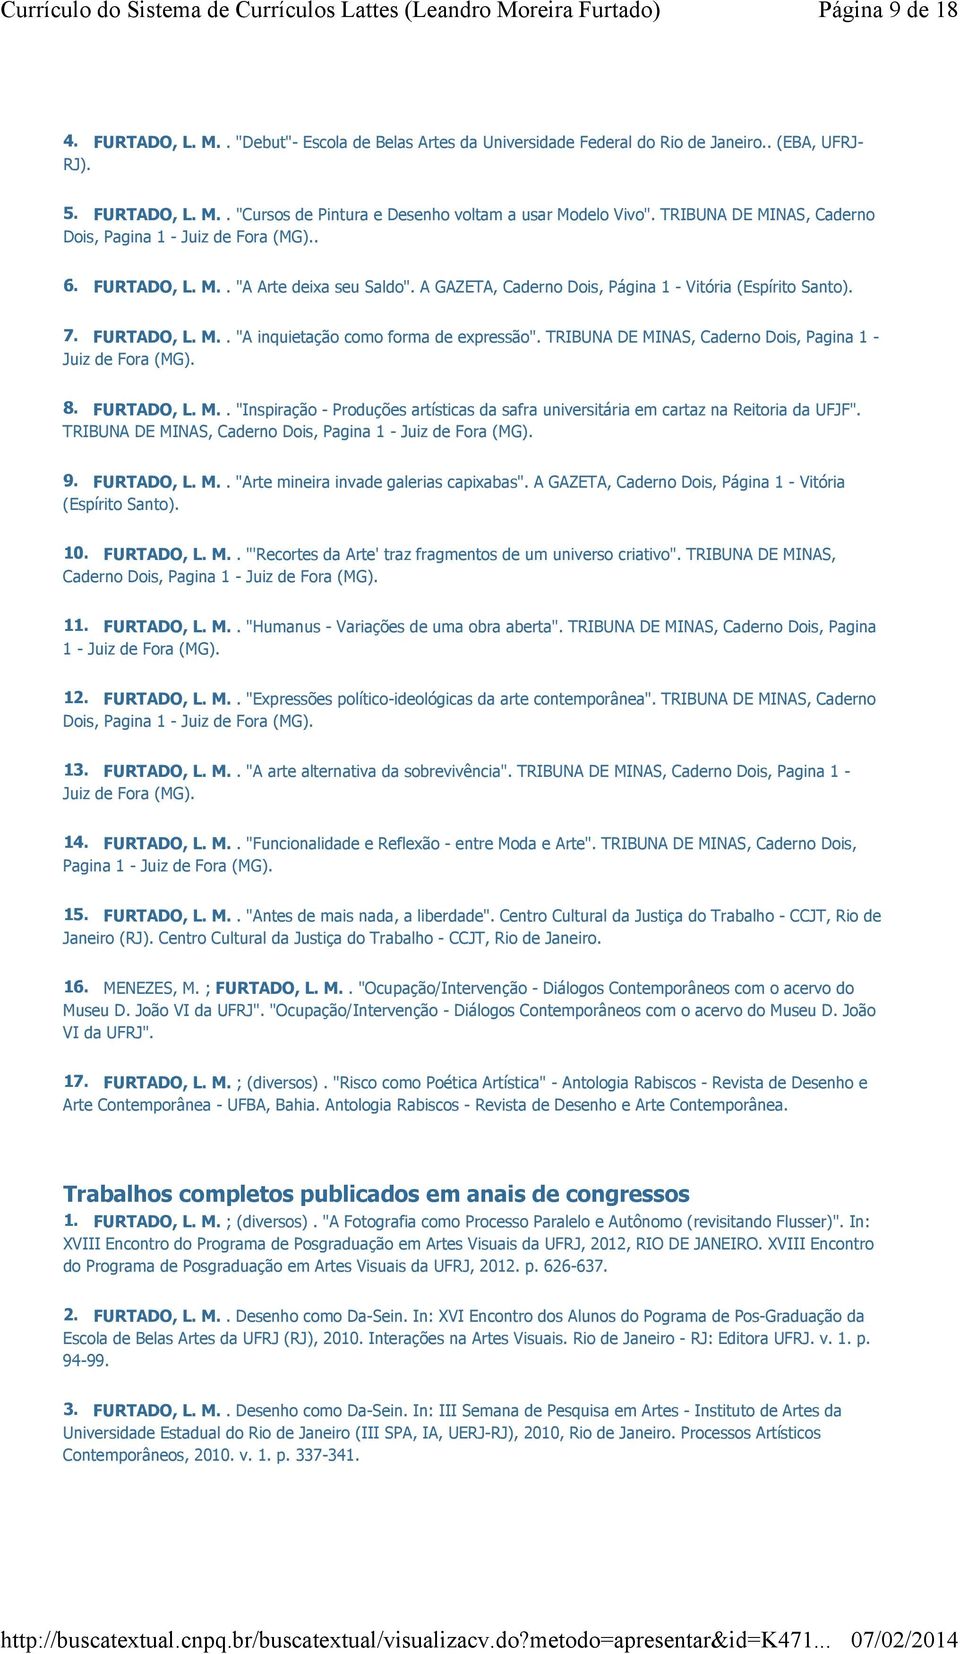 TRIBUNA DE MINAS, Caderno Dois, Pagina 1 - Juiz de Fora (MG). 8. FURTADO, L. M.. "Inspiração - Produções artísticas da safra universitária em cartaz na Reitoria da UFJF".